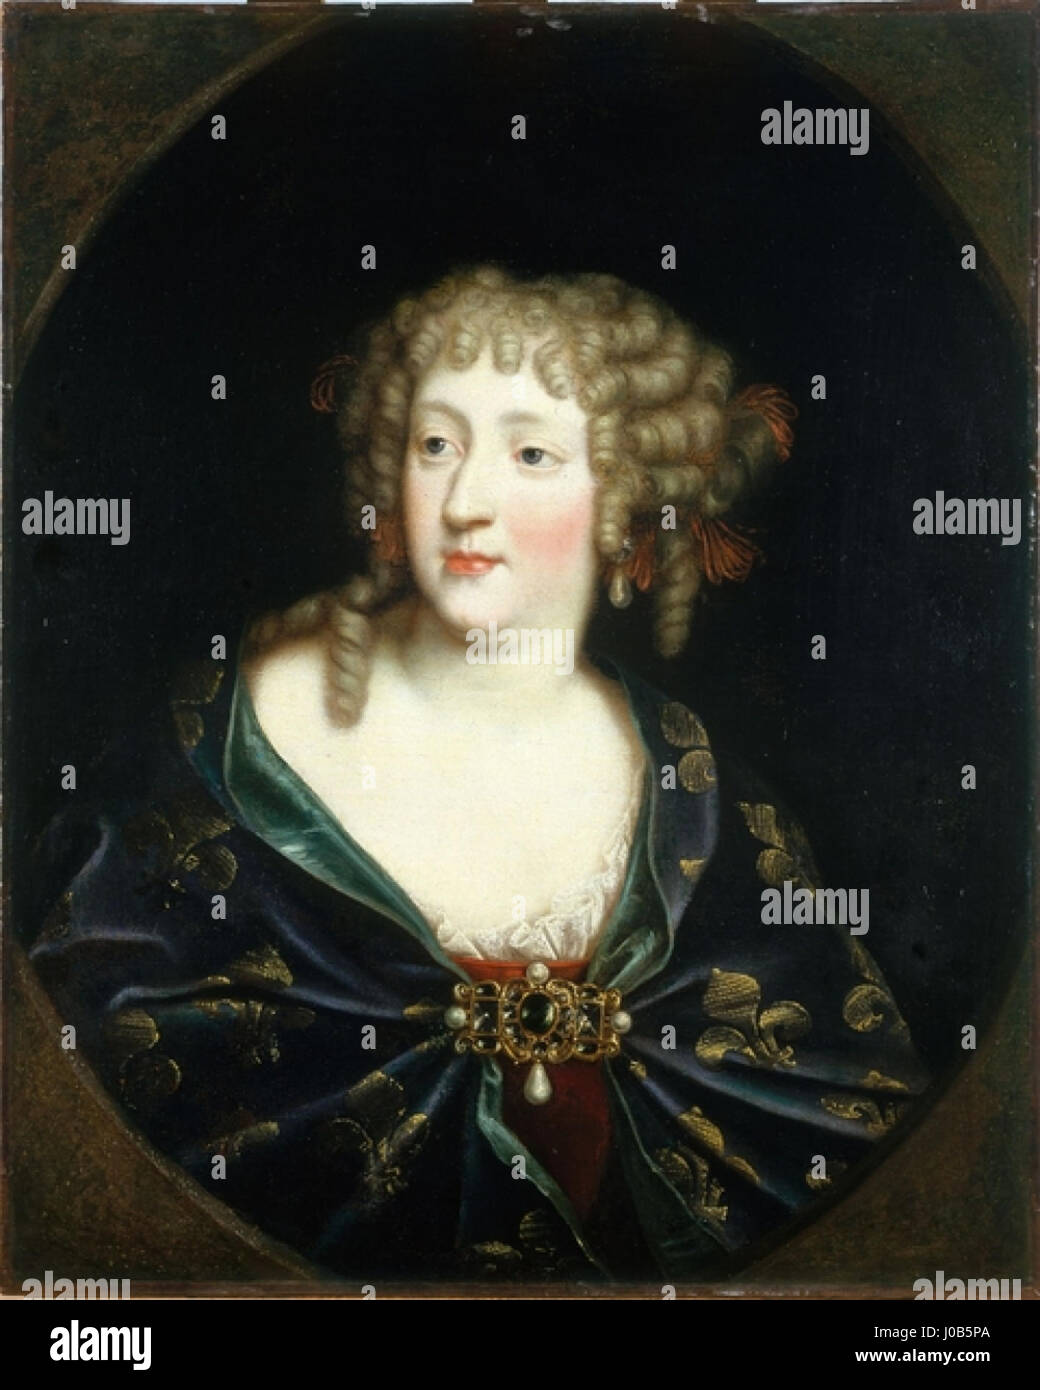 Ölgemälde von Marie Thérèse Österreichs (1638-1683), Ehefrau von Louis XIV von einem unbekannten Künstler Stockfoto